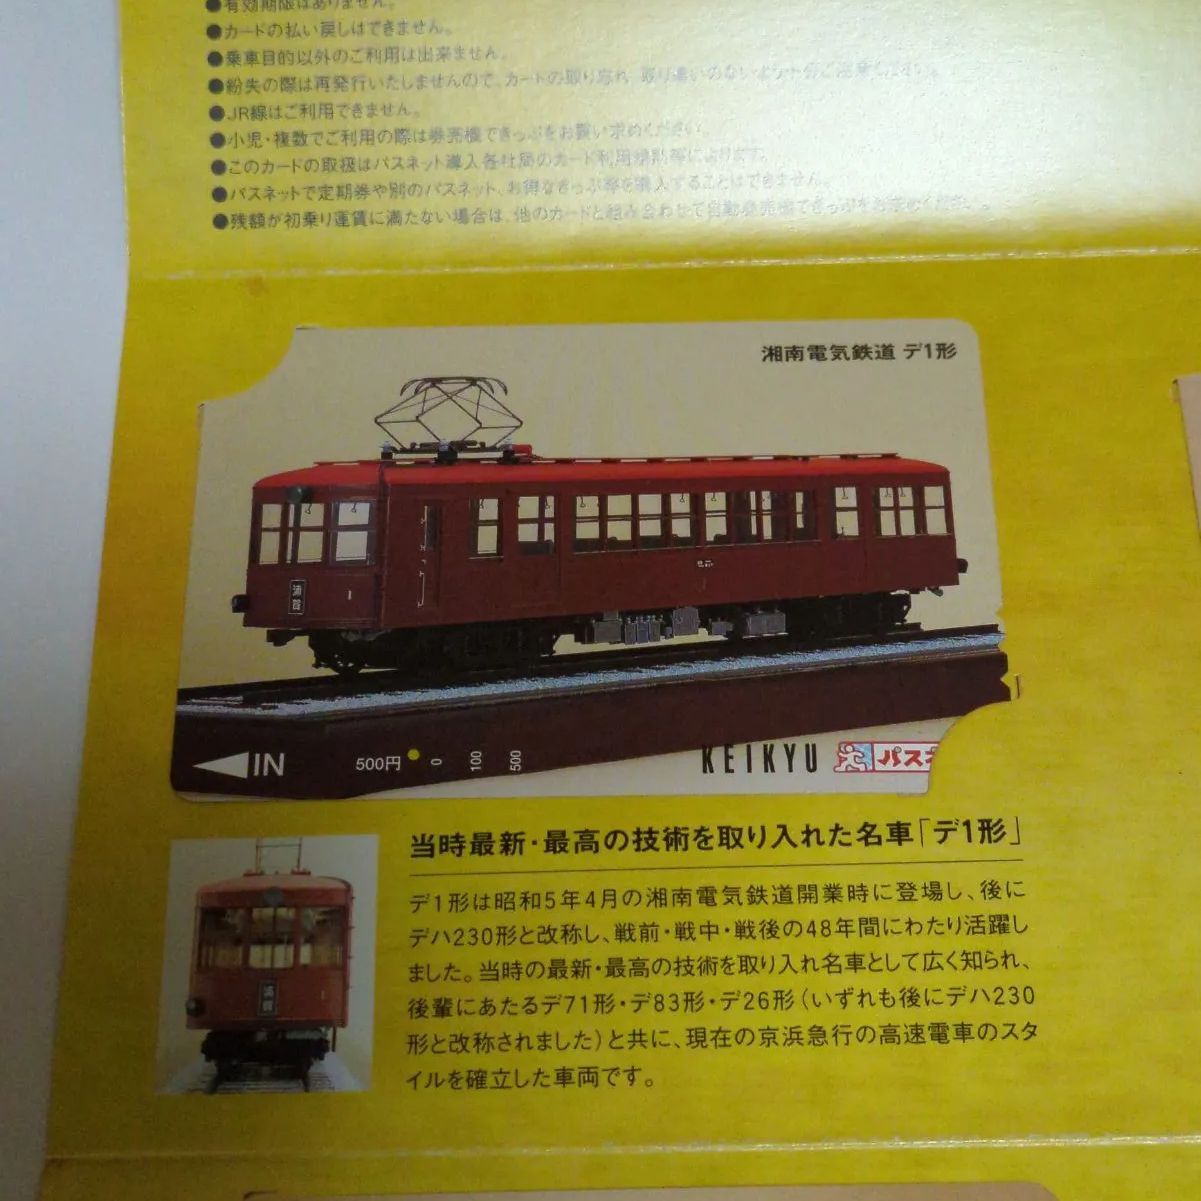 ❖ 京急電鉄記念グッズ ❖〘パスネットカード４点セット/使用済カード